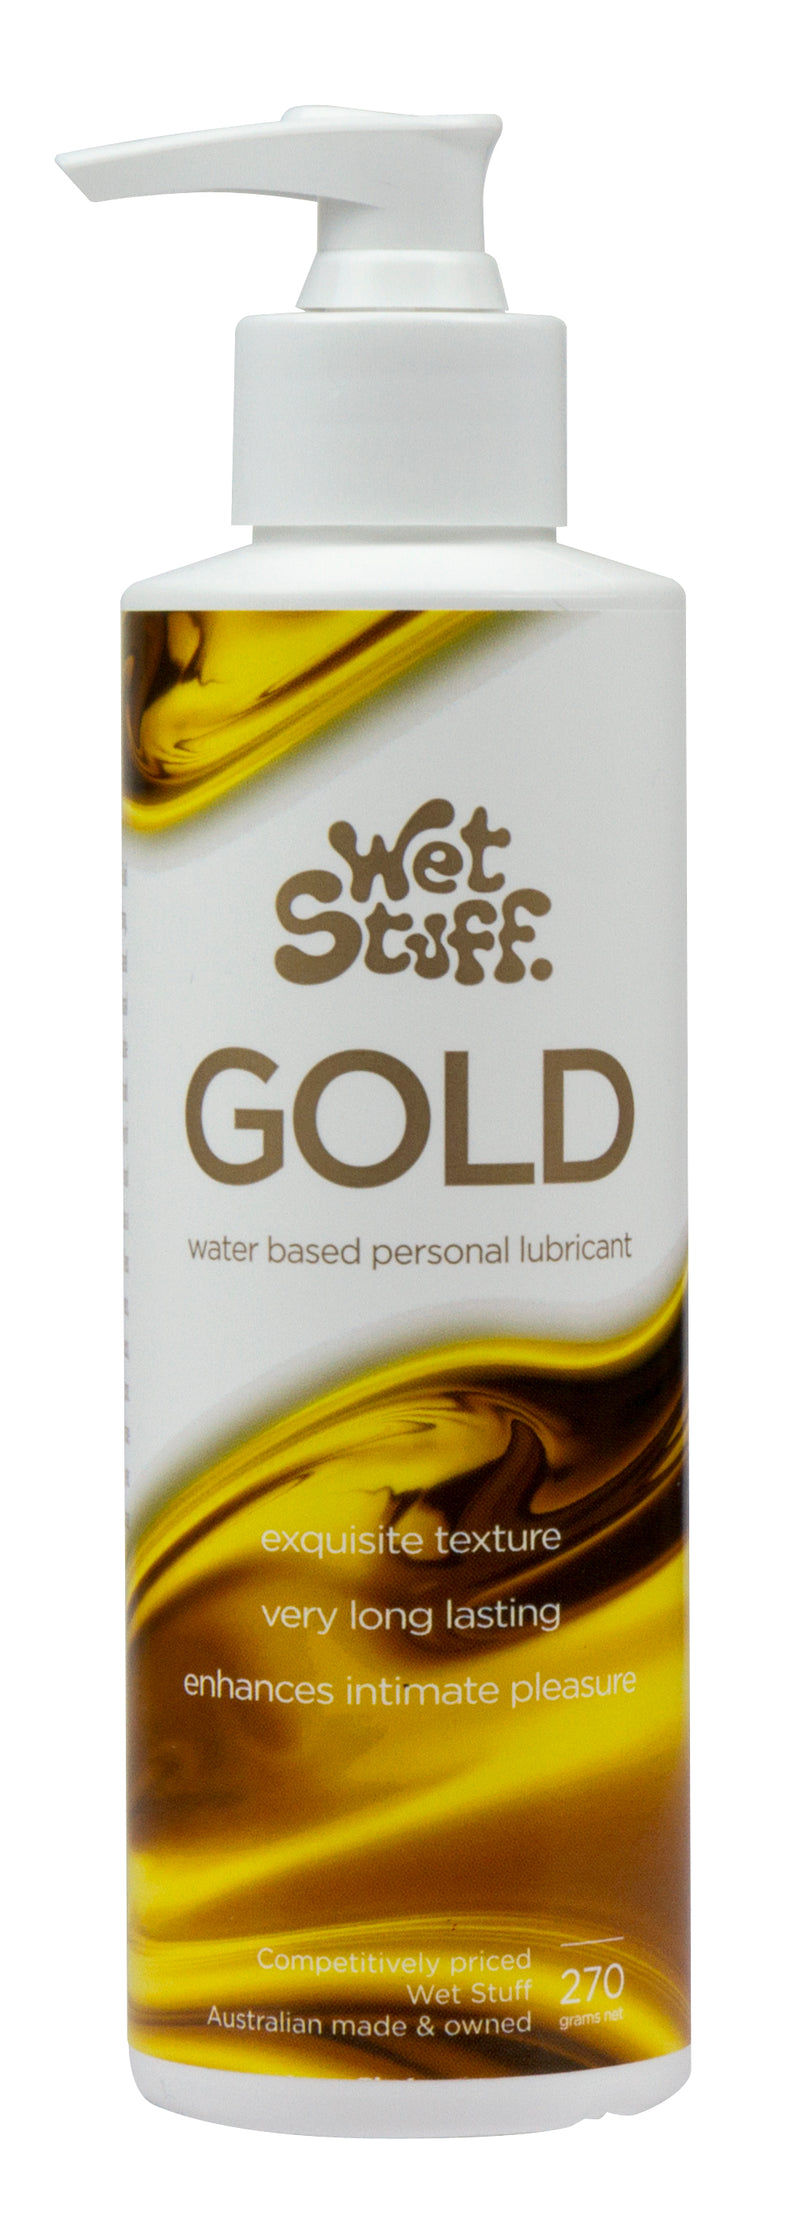 Wet Stuff Gold 270g Pump